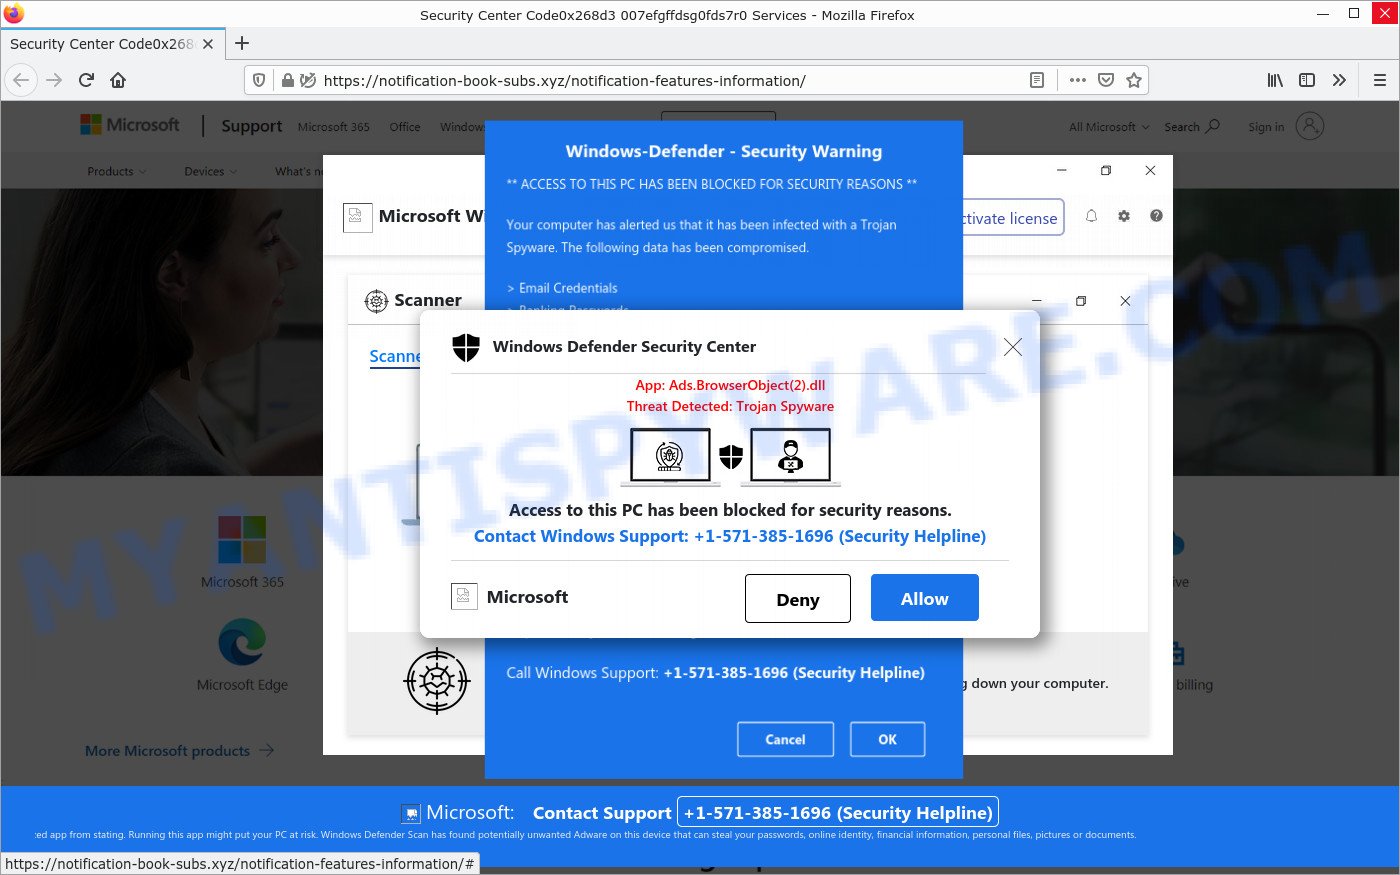 Windows Defender Security Warning pop-up scam